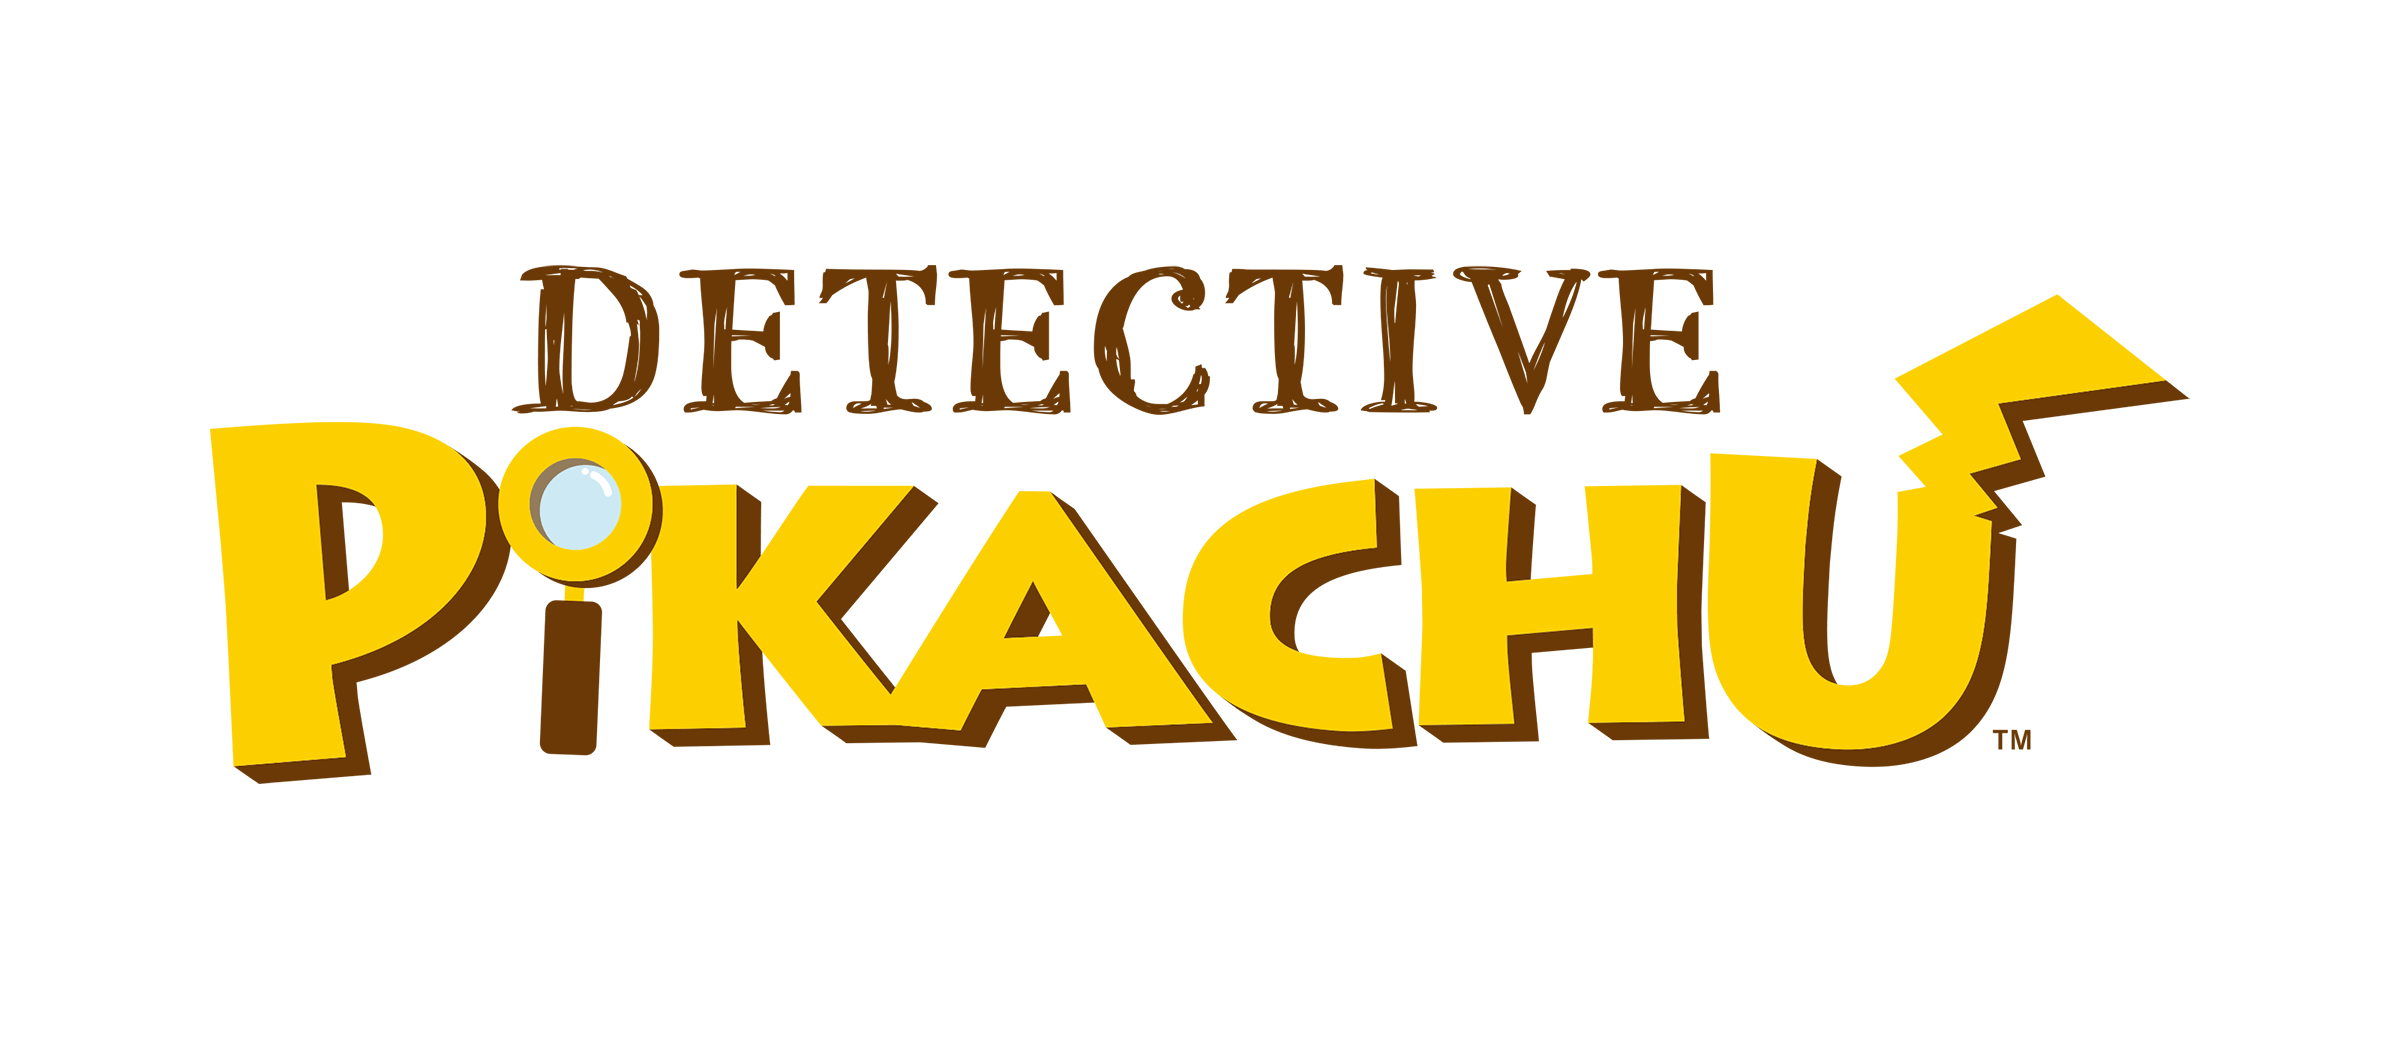 Pikachu Logo - Detective Pikachu Logoémon Crossroads